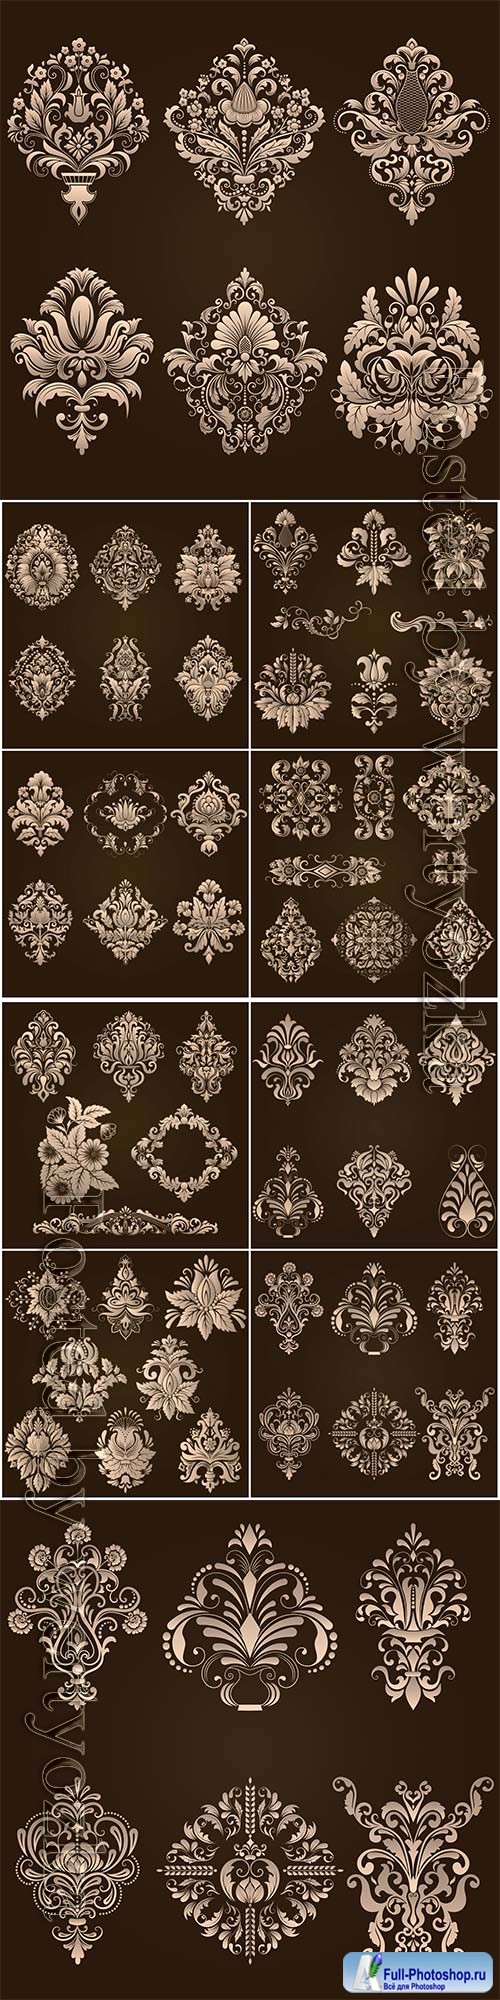 Vector set of damask ornamental elements